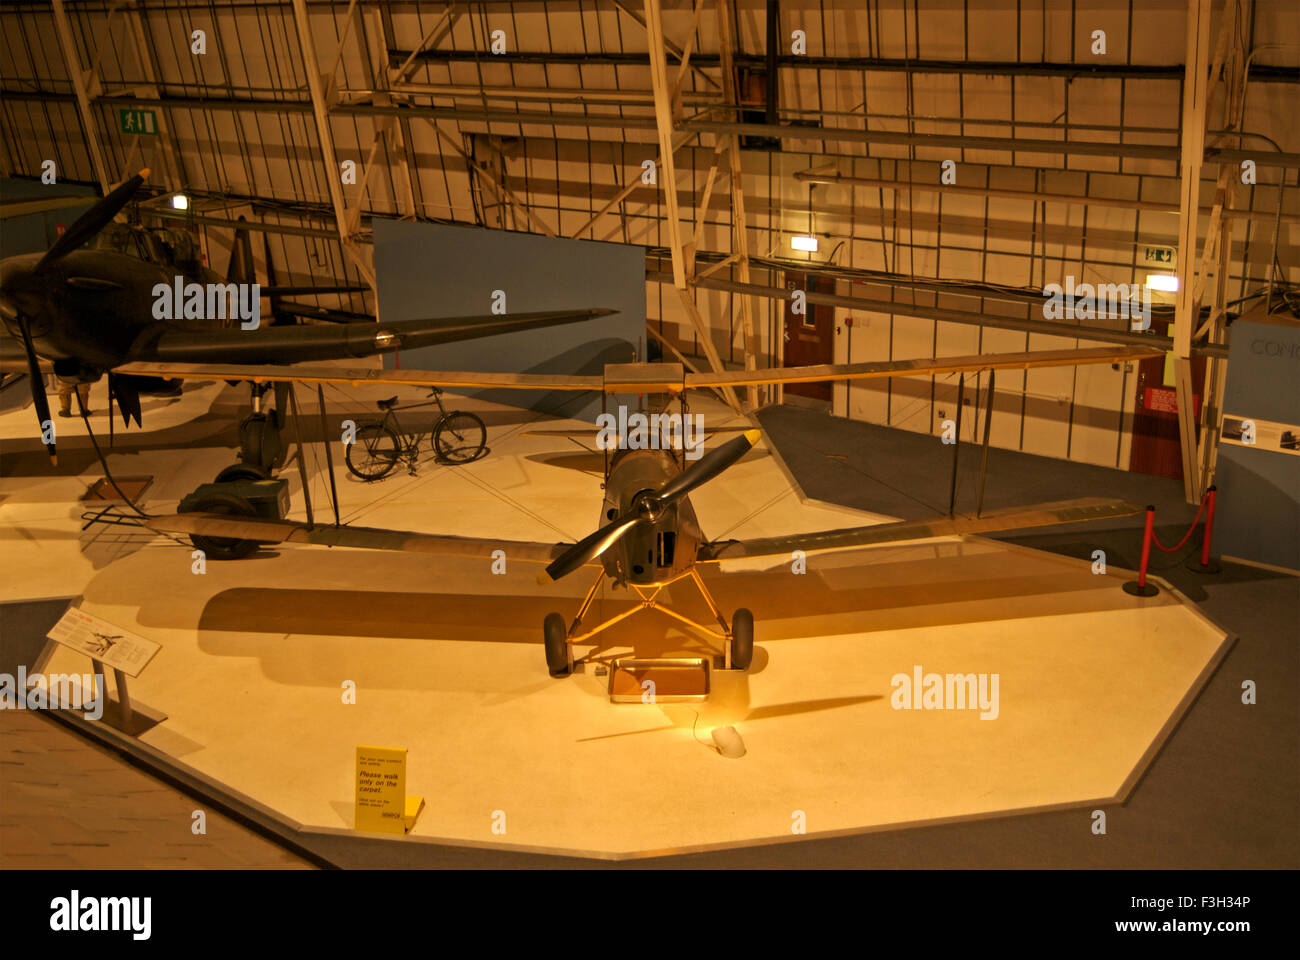 Avion de chasse dans la Royal Air Force Museum ; Londres ; Royaume-Uni Royaume-Uni Angleterre Banque D'Images